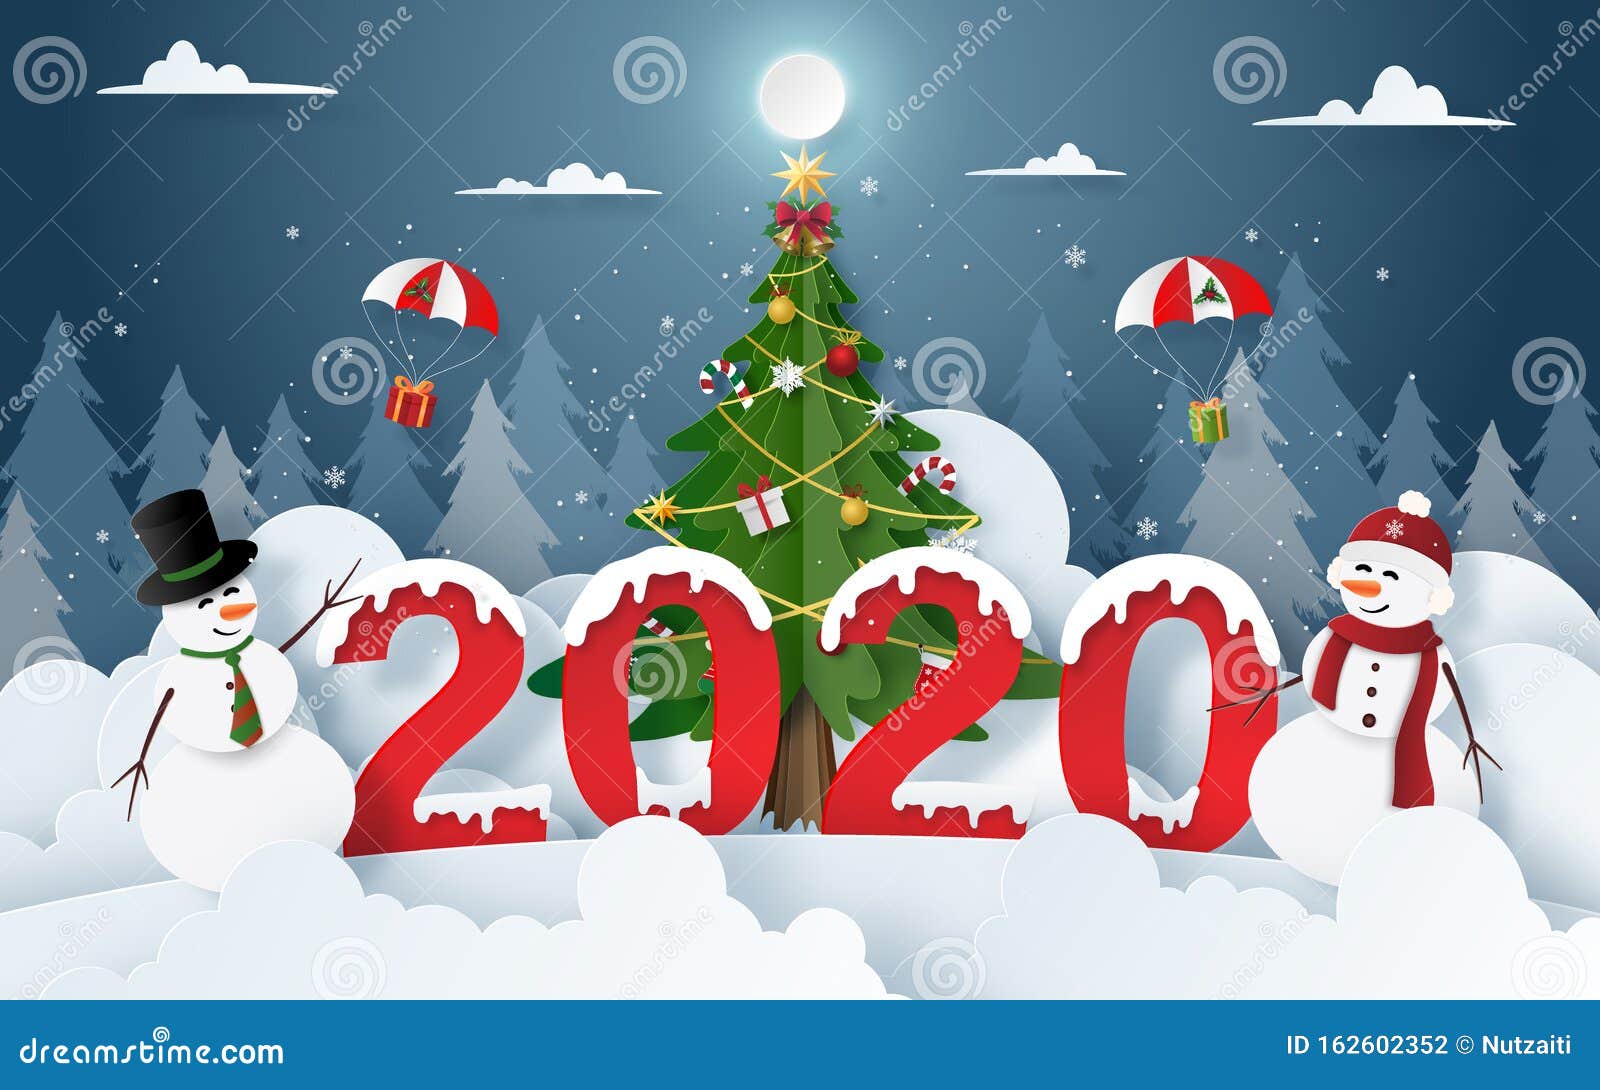 Origami Paper Arte De Snowman Con Navidad Y Año Nuevo 2020 En Nochebuena  Ilustración del Vector - Ilustración de corte, arte: 162602352